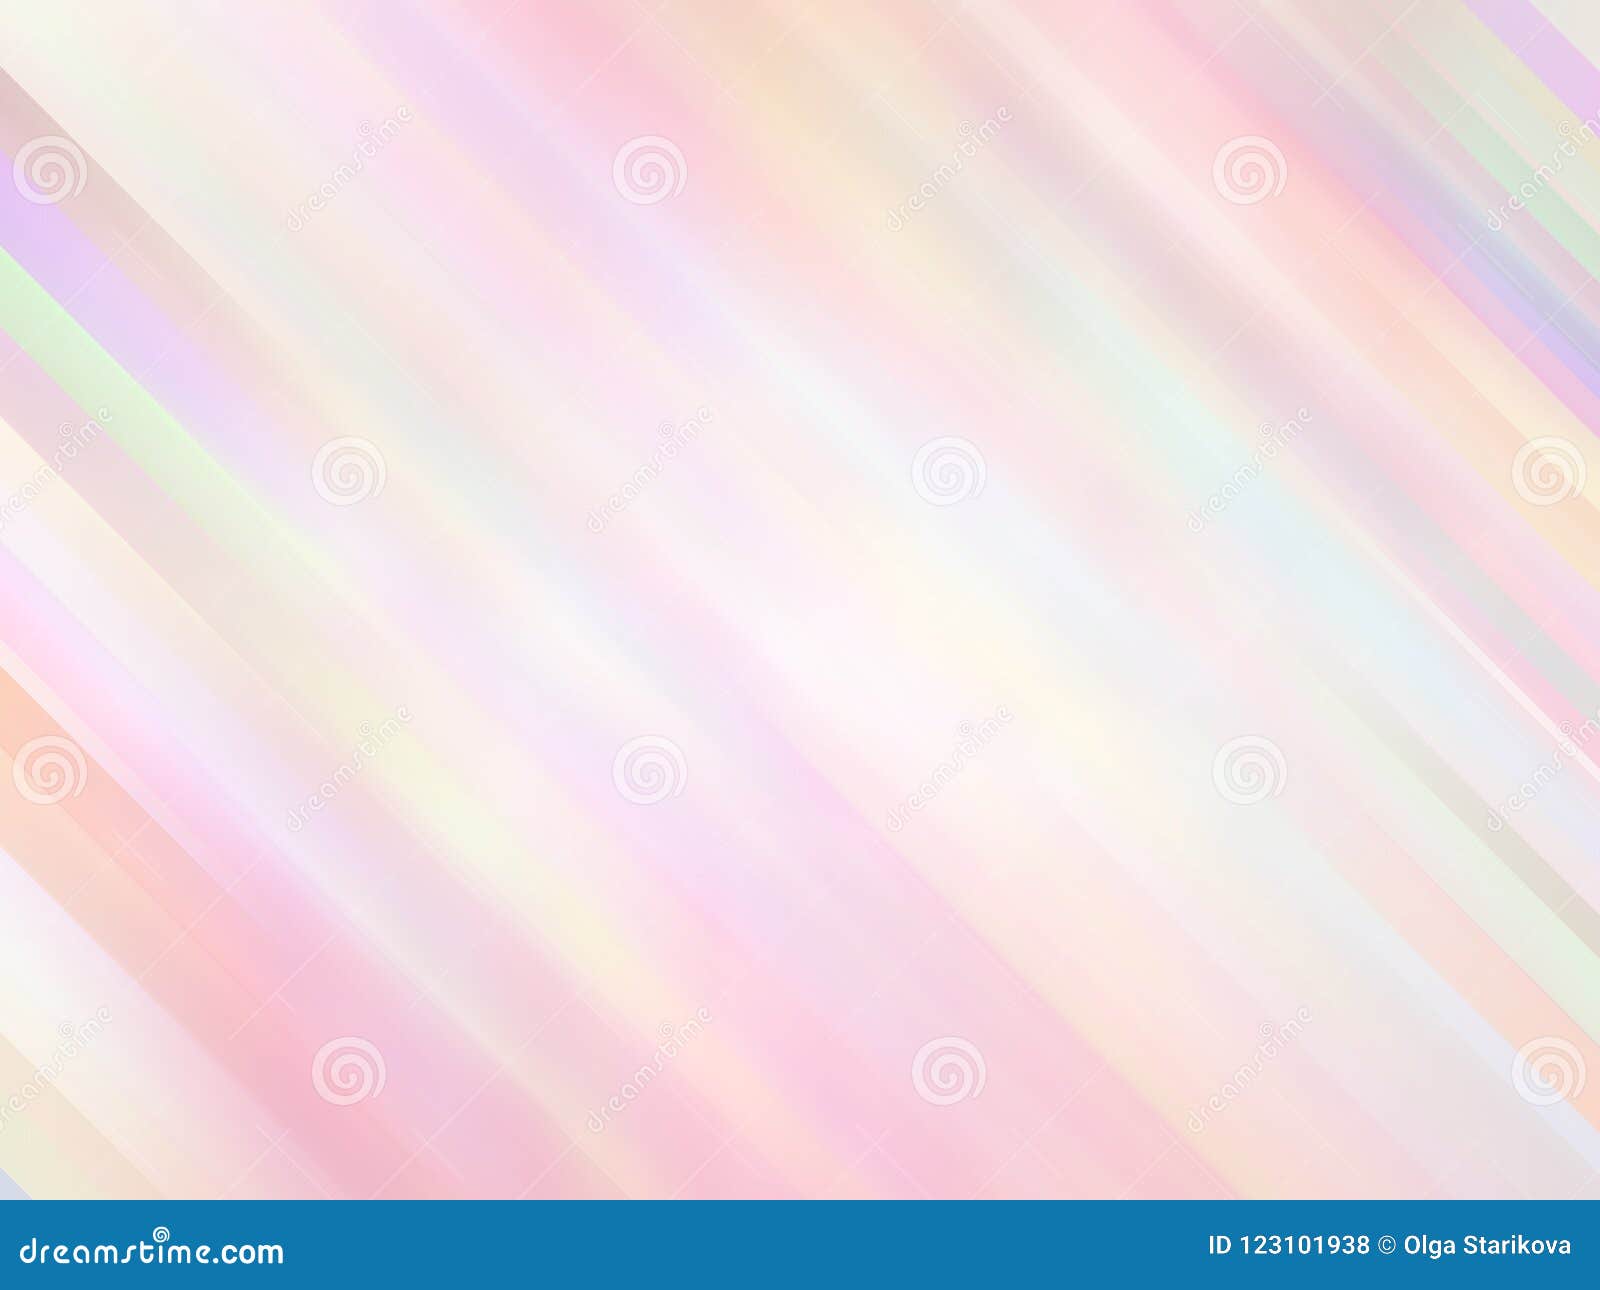 El Fondo Texturizado Borroso Liso Colorido Suave En Colores Pastel  Abstracto Del Foco Entonó En Color Rosado Puede Ser Utilizado Stock de  ilustración - Ilustración de modelo, enmascarado: 123101938